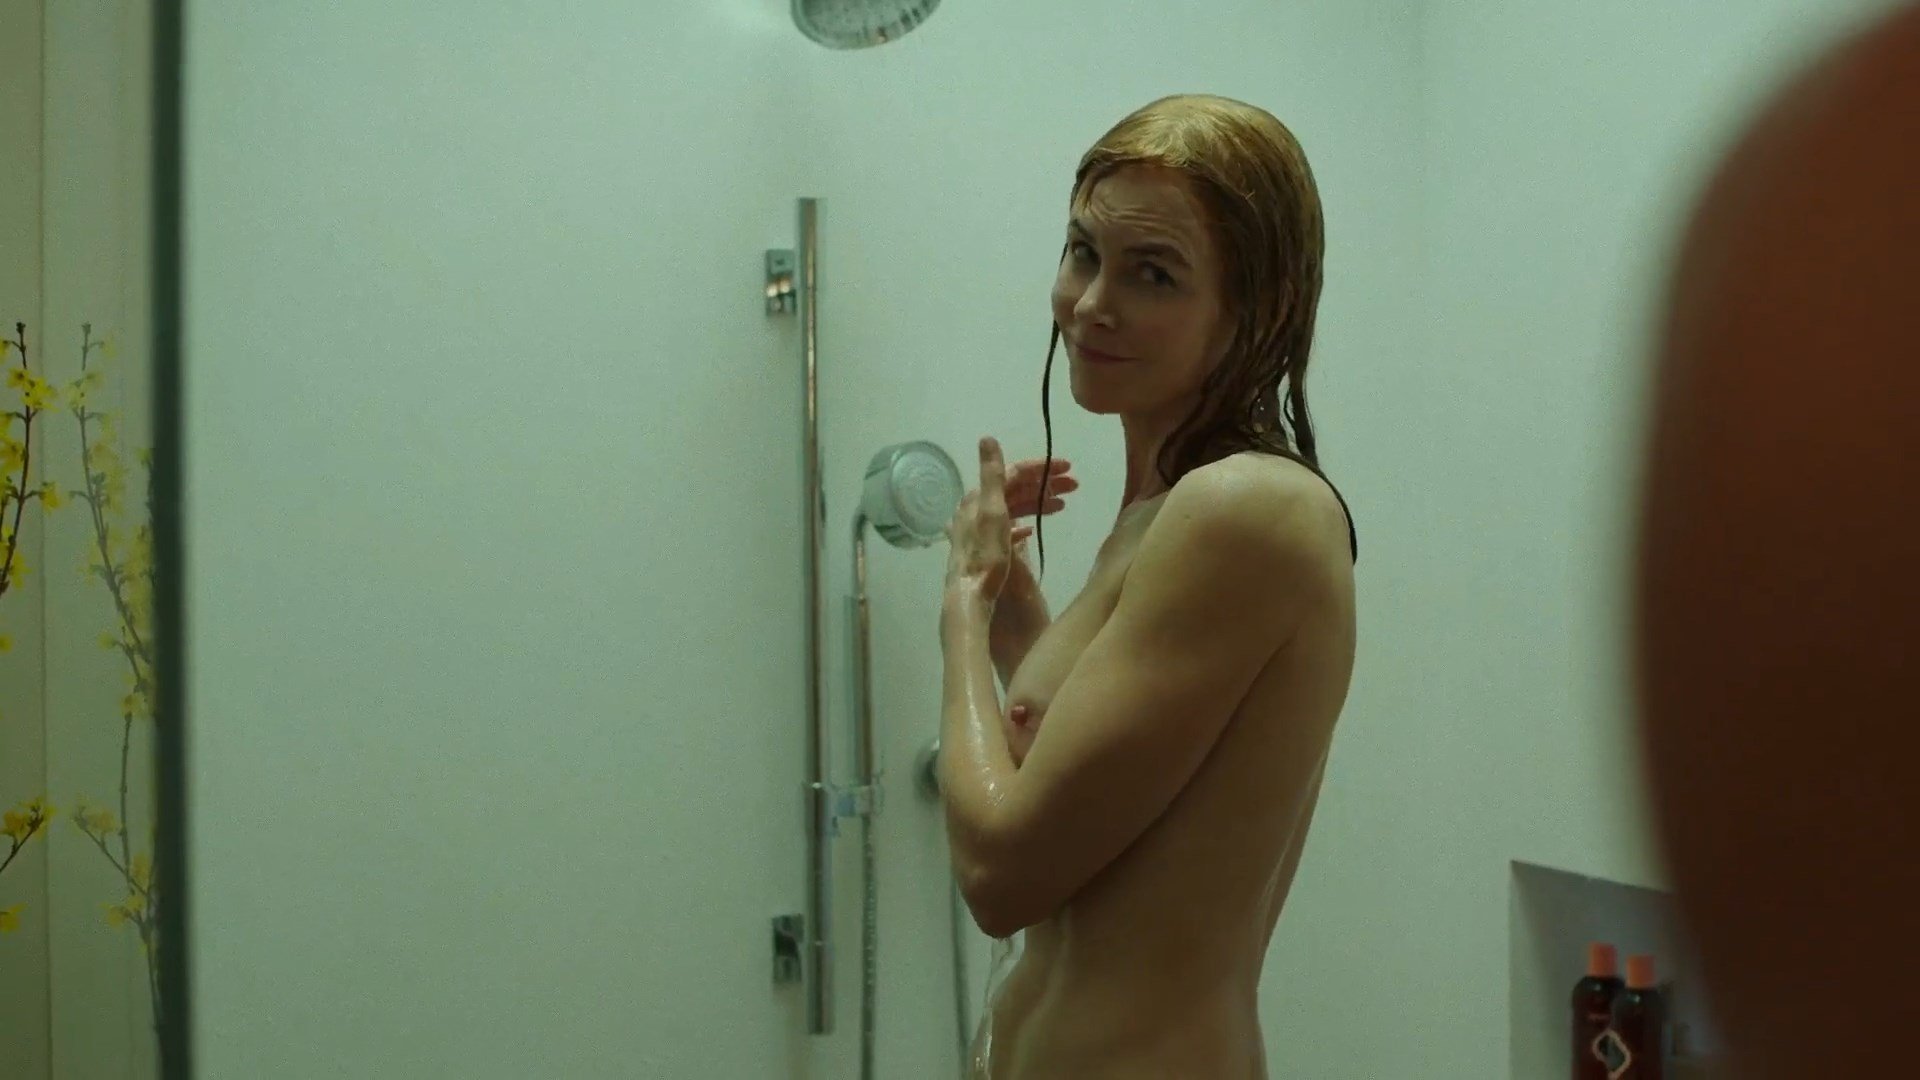 Nicole Kidman голая во время горячего секс видео - Секс видео знаменитостей